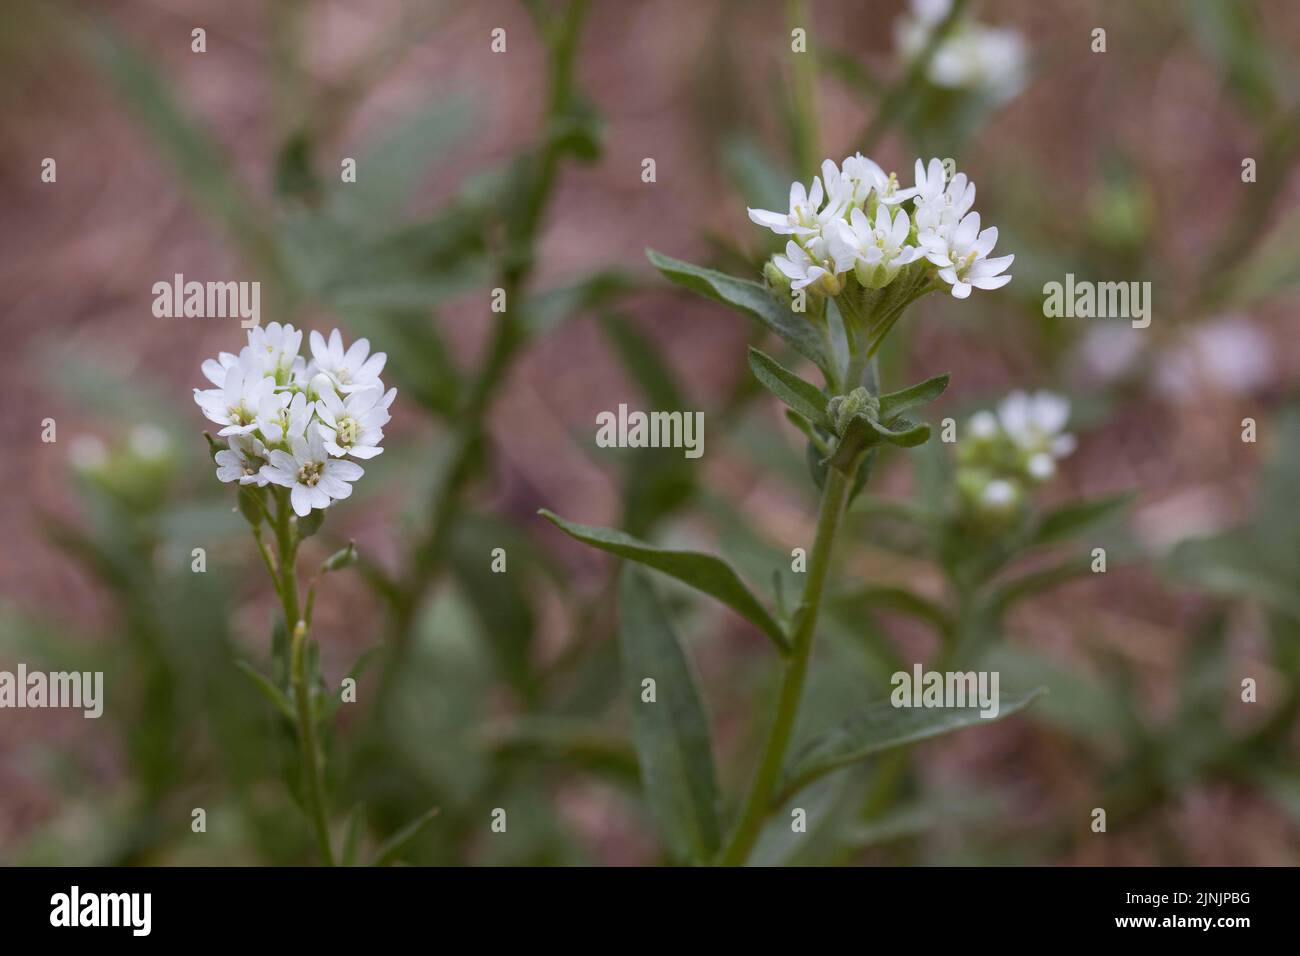 Hoary alyssum, Hoary false alyssum, Hoary false madwort (Berteroa incana), blooming, Germany Stock Photo